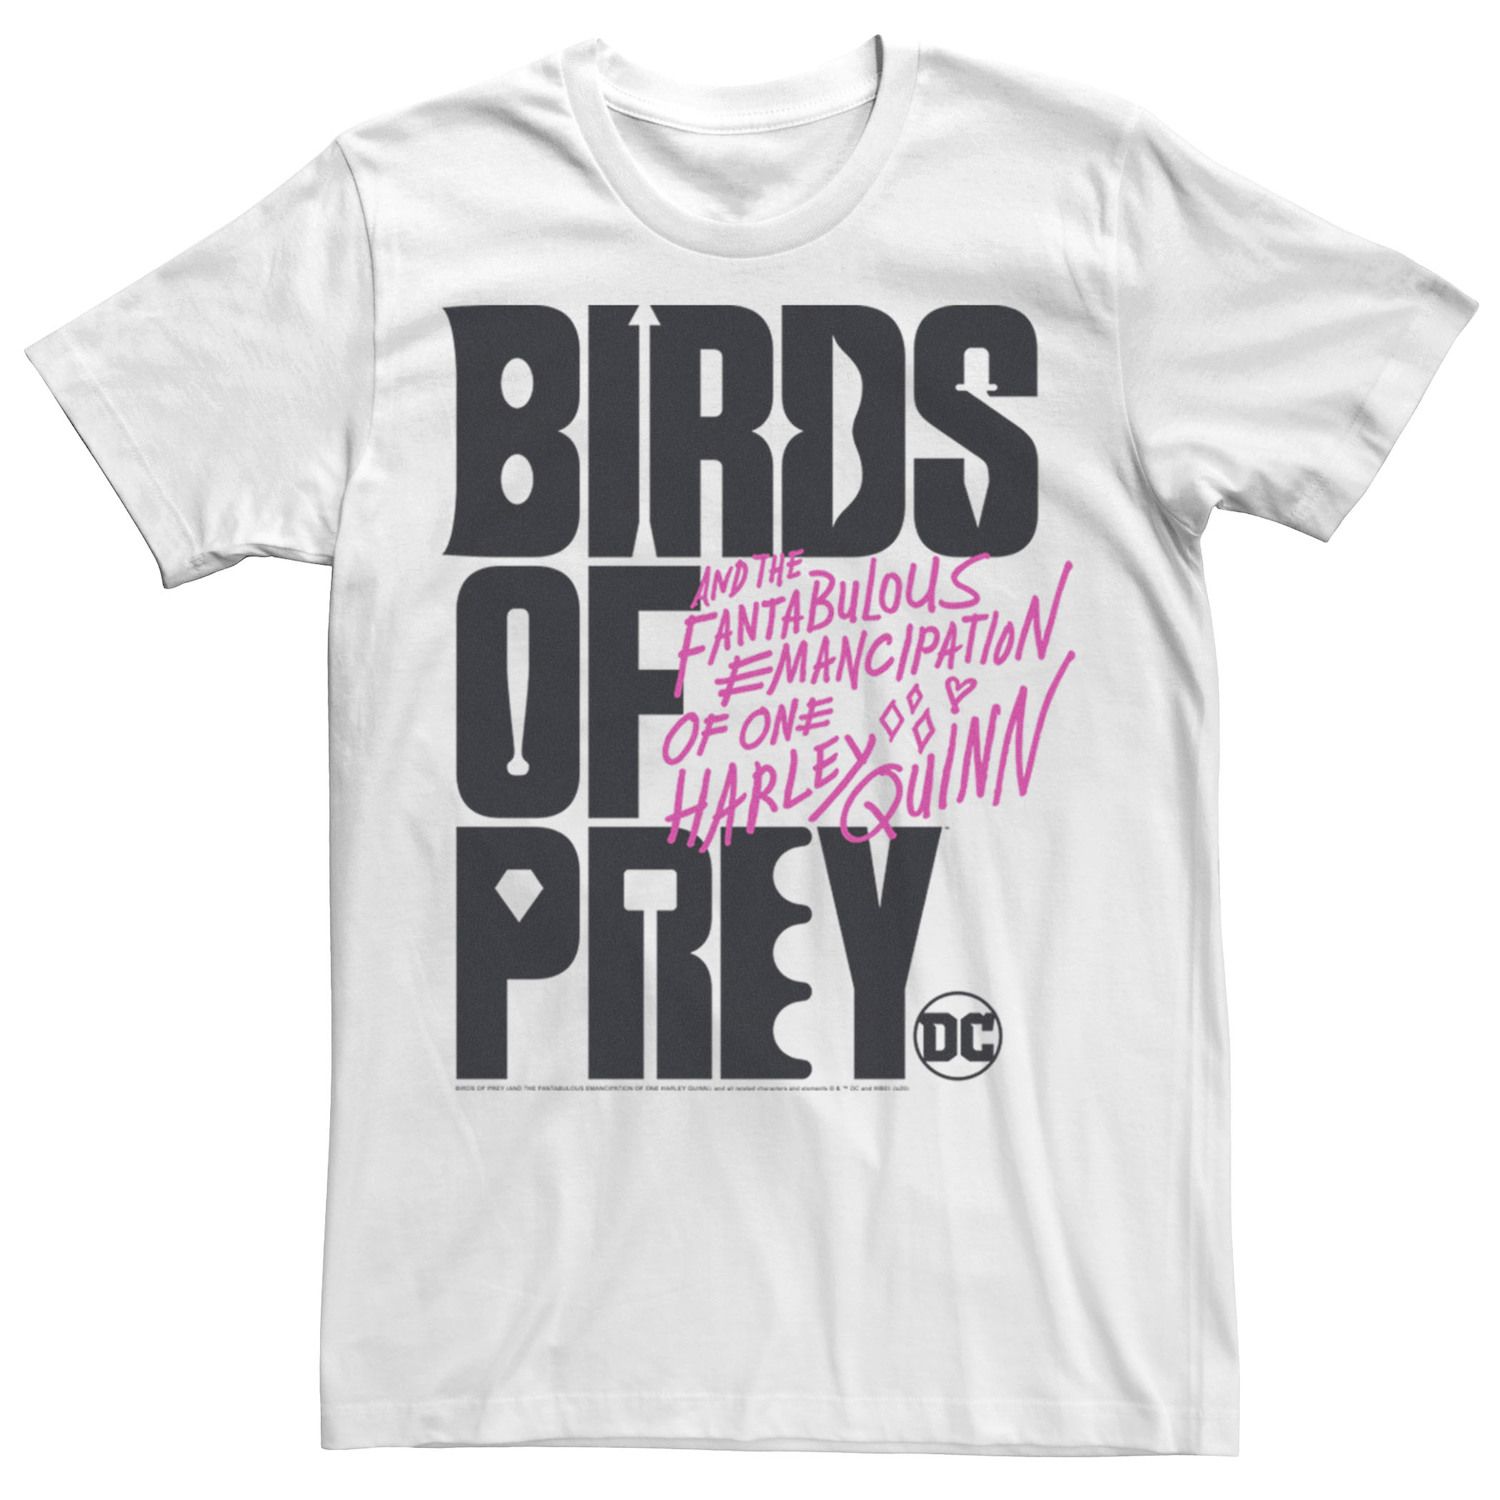 Мужская футболка с текстовым логотипом «Хищные птицы» DC Comics наклейка патч для одежды dc хищные птицы 1